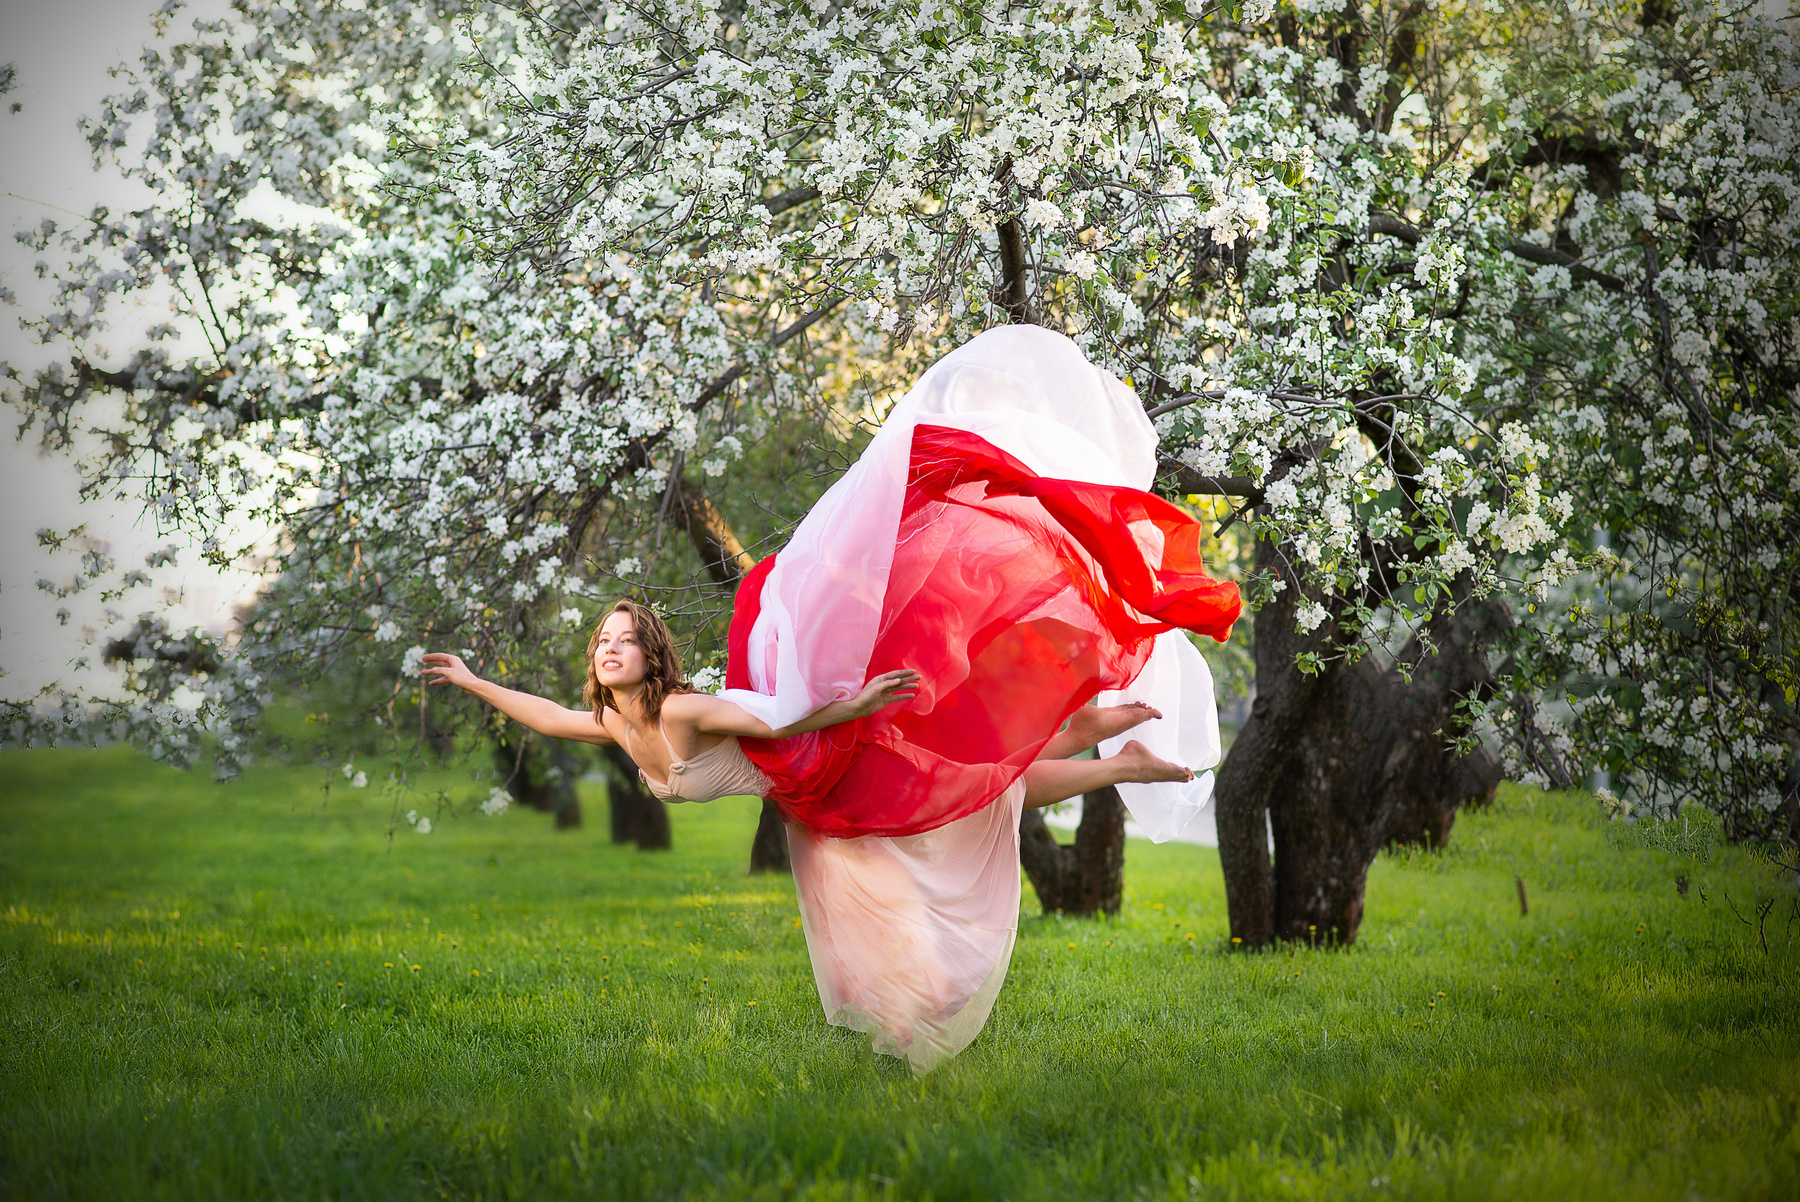 Gravity цветы яблони левитация воздух зеленый трава полёт магия фея красота девушка